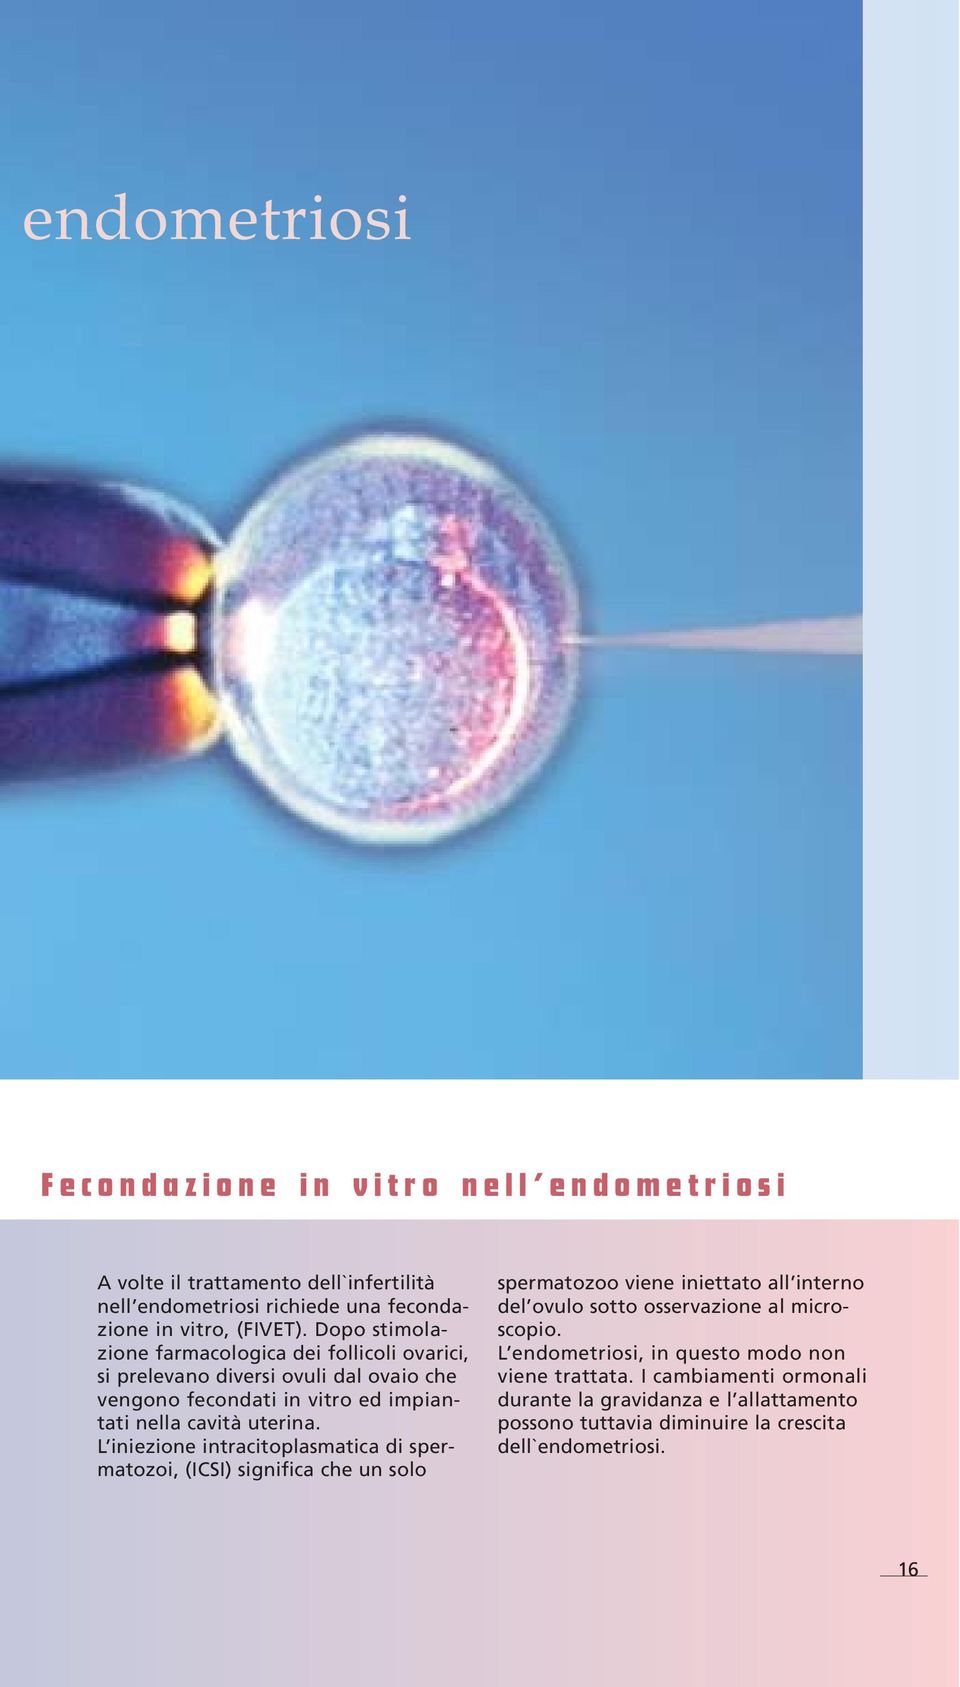 L iniezione intracitoplasmatica di spermatozoi, (ICSI) significa che un solo spermatozoo viene iniettato all interno del ovulo sotto osservazione al microscopio.